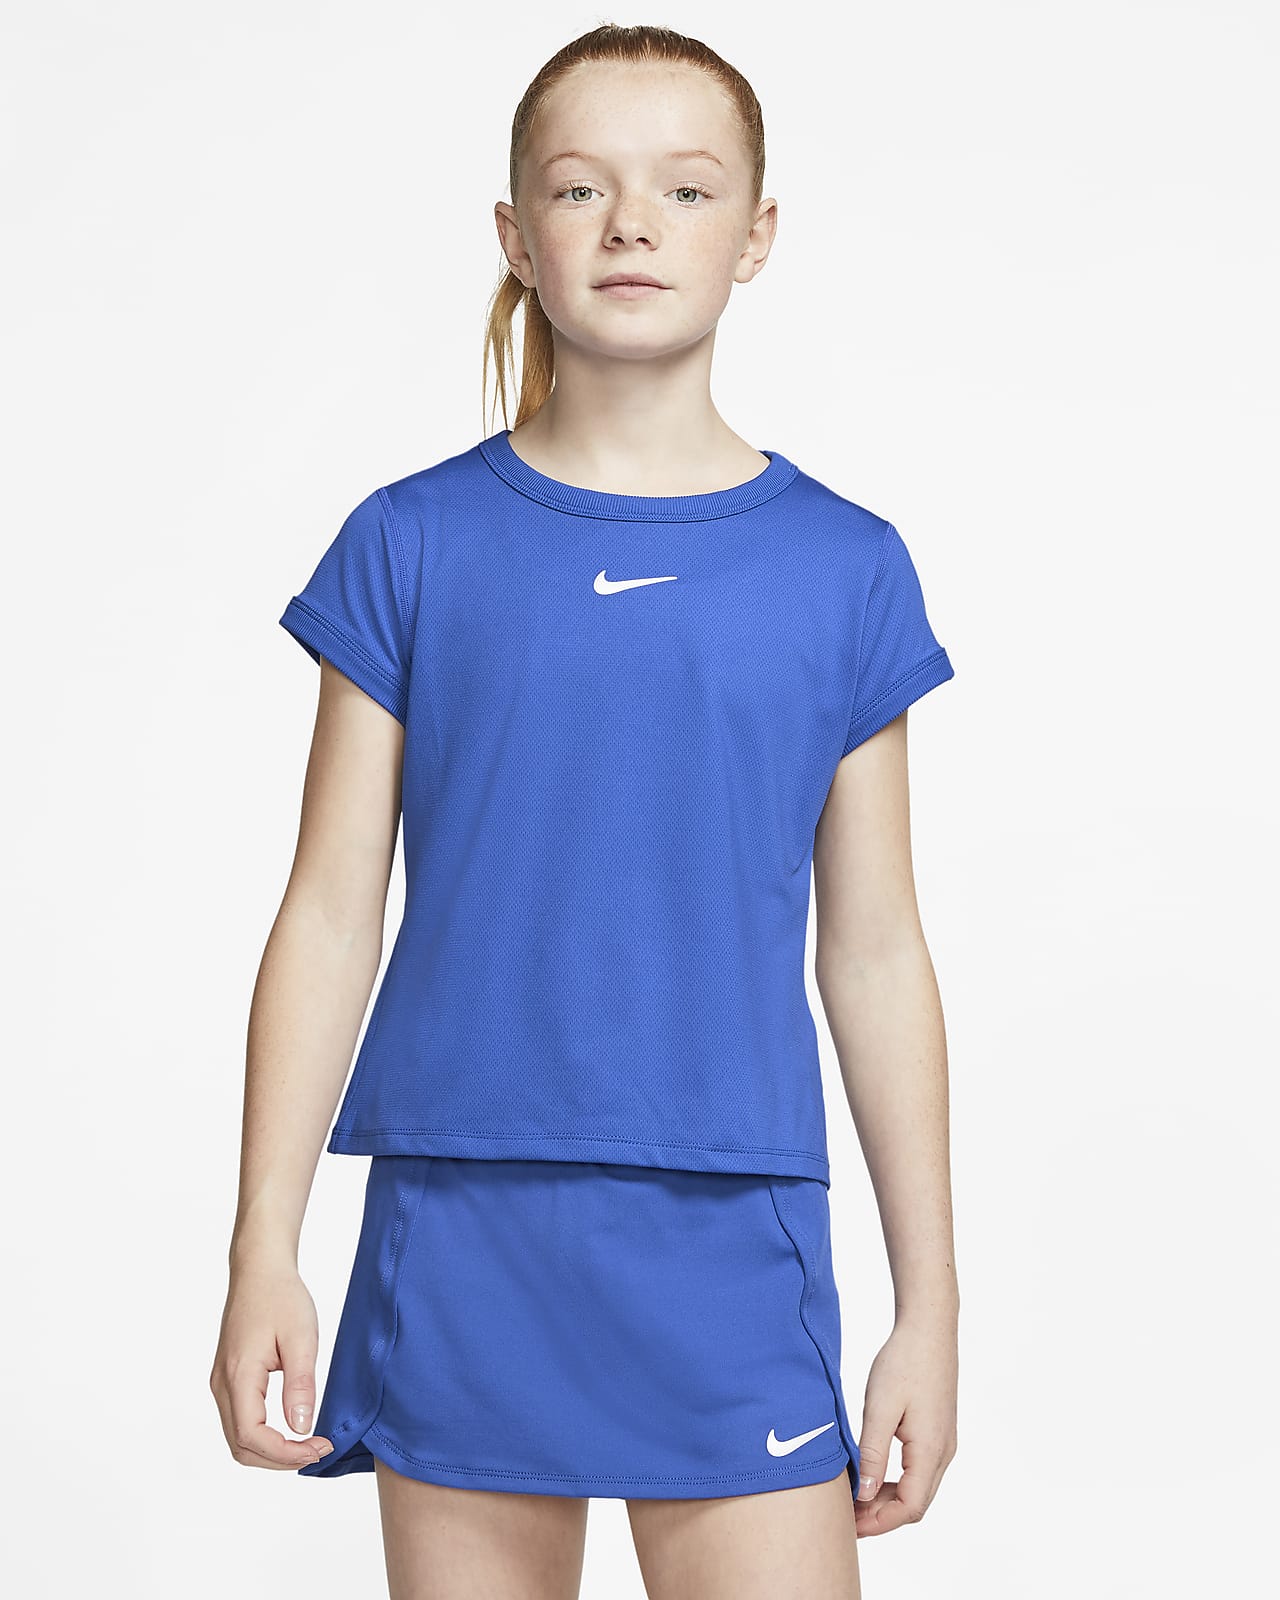 Volver a llamar Decrépito buque de vapor Camiseta de tenis para niña talla grande NikeCourt Dri-FIT. Nike.com